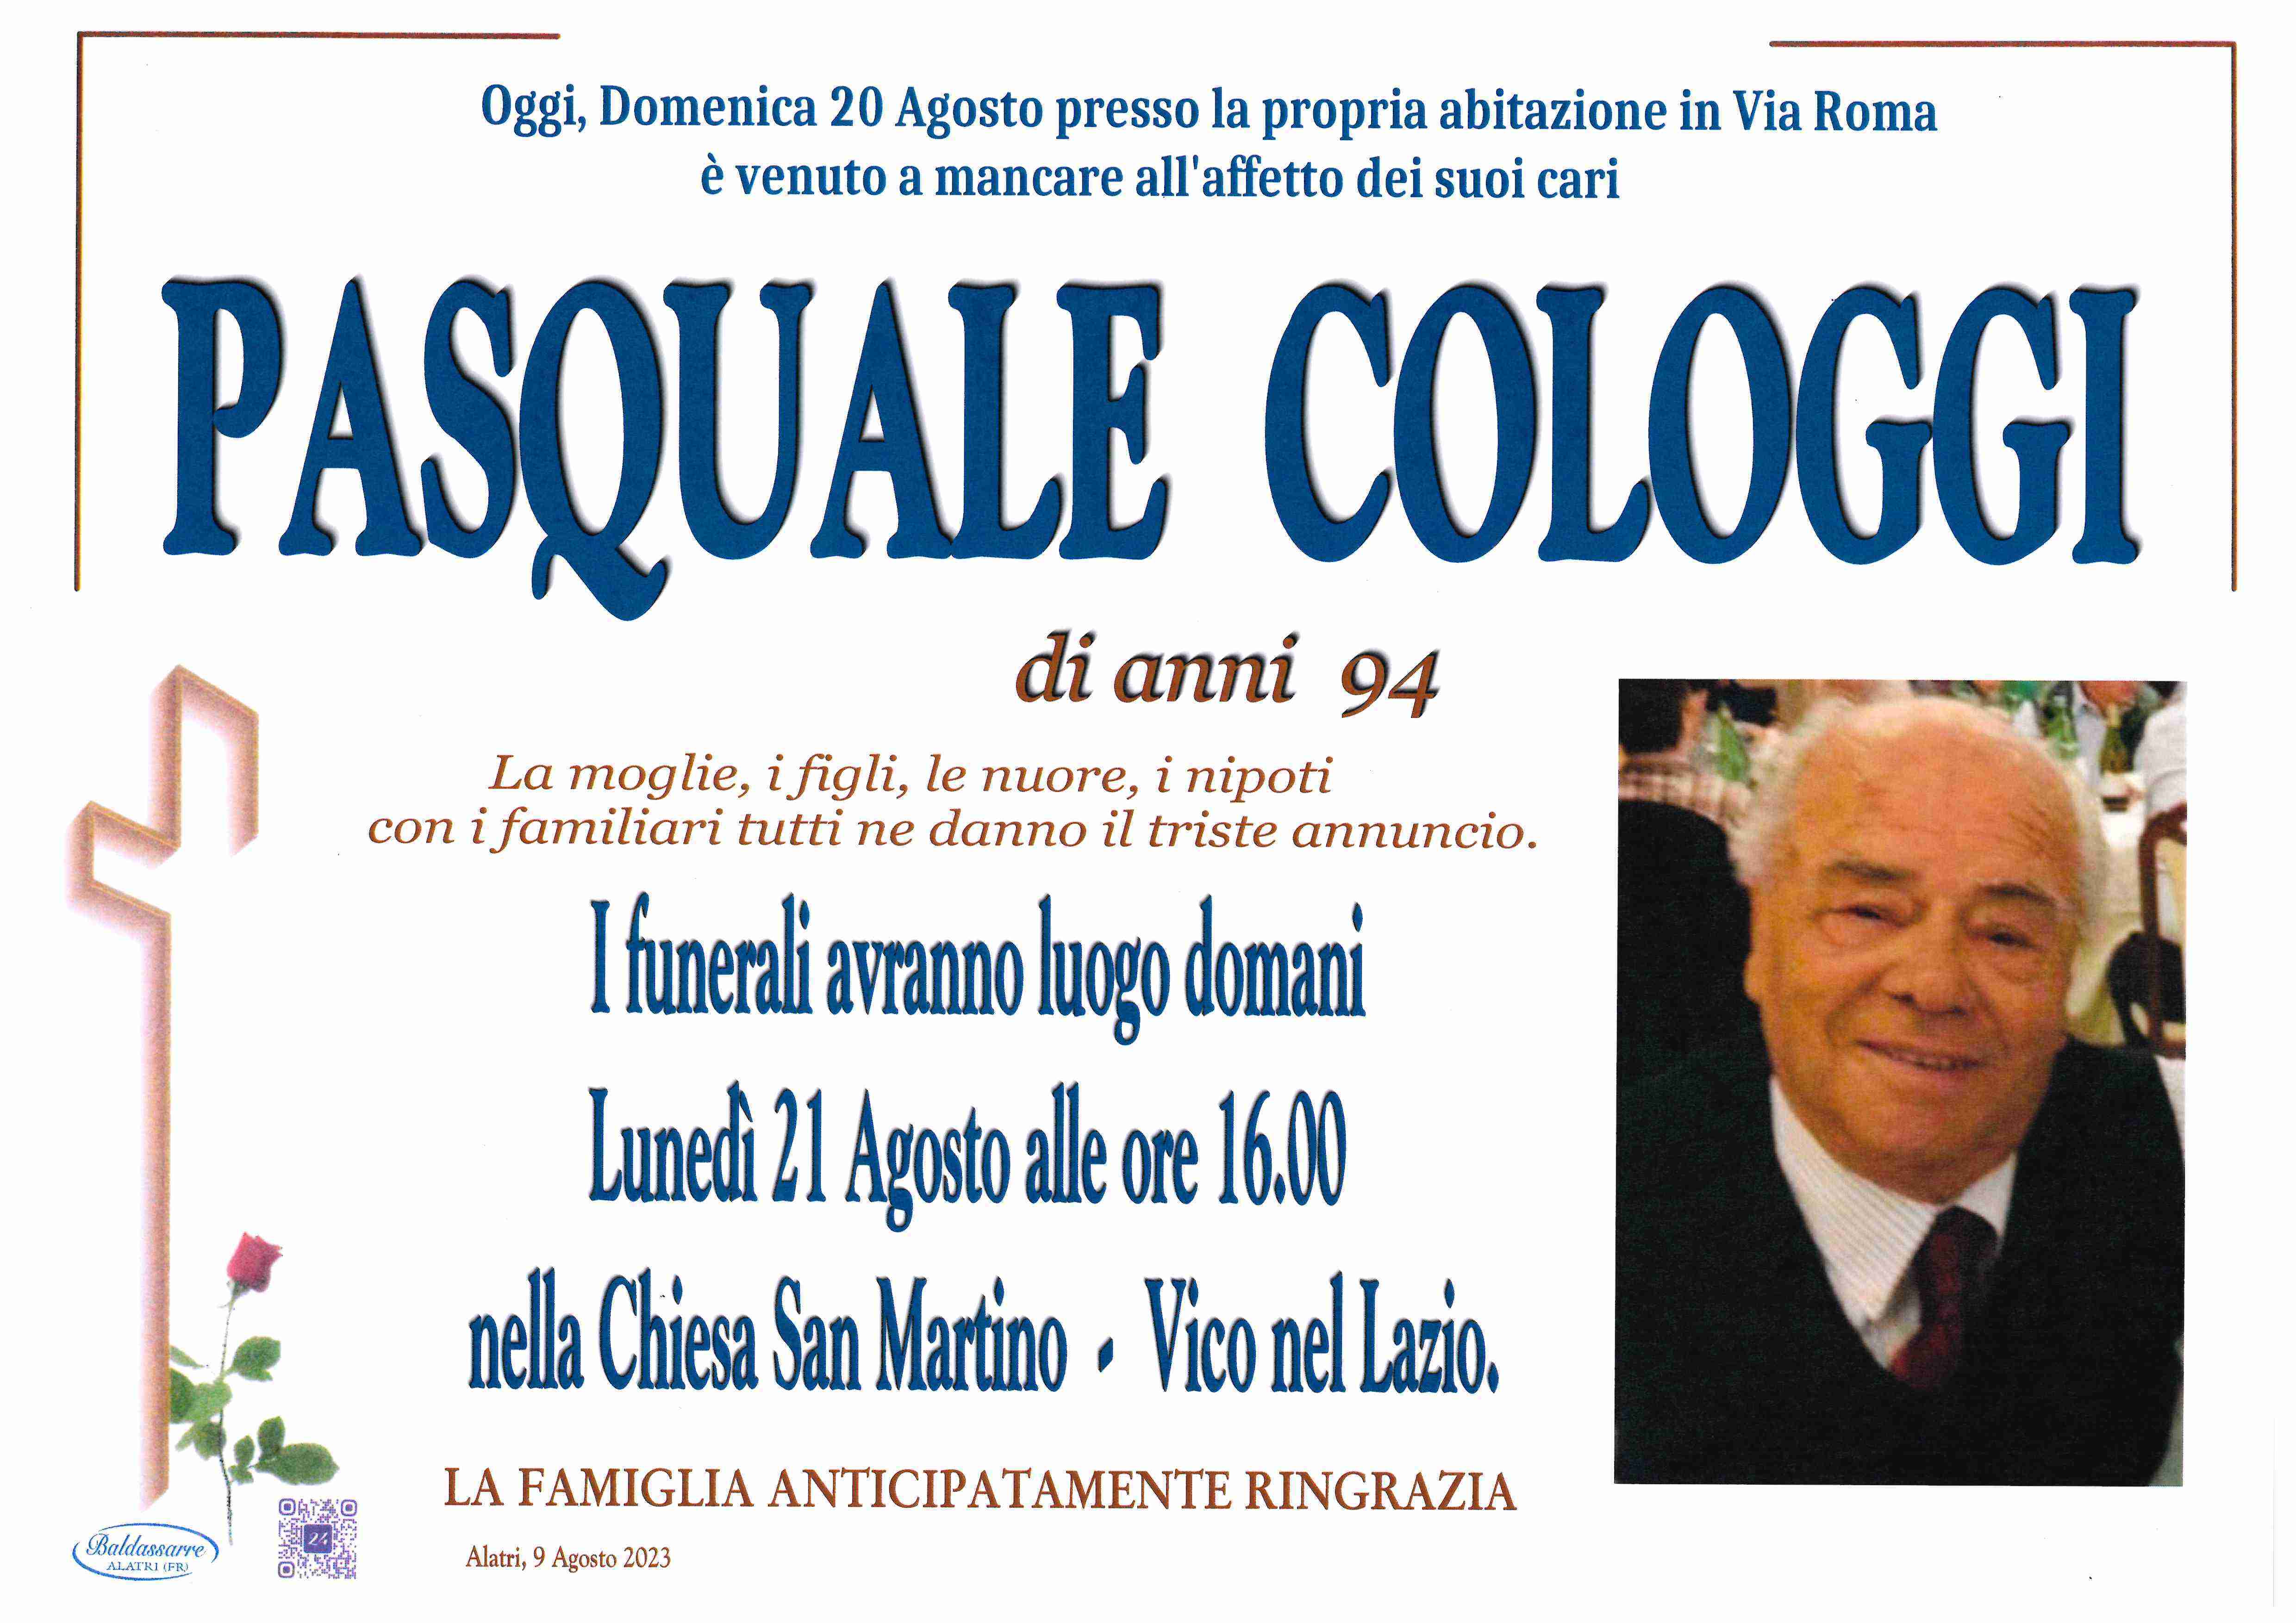 Pasquale Cologgi